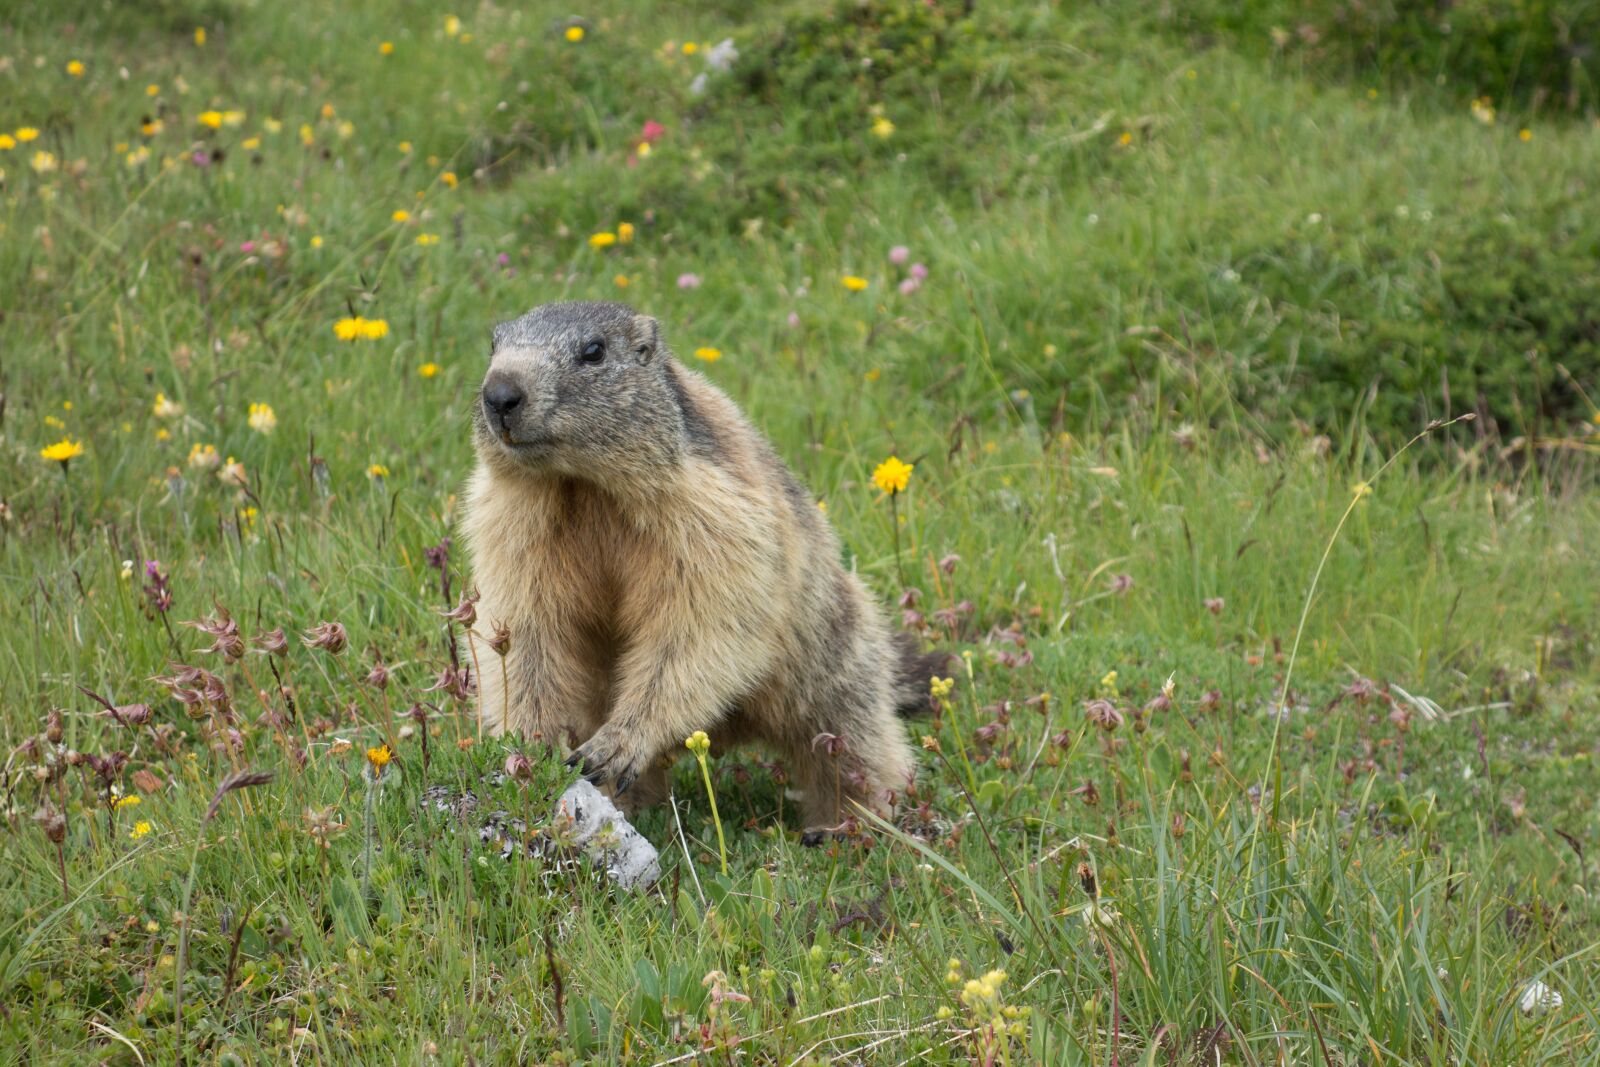 Sony Cyber-shot DSC-RX100 sample photo. Marmot, alpine, rodent photography